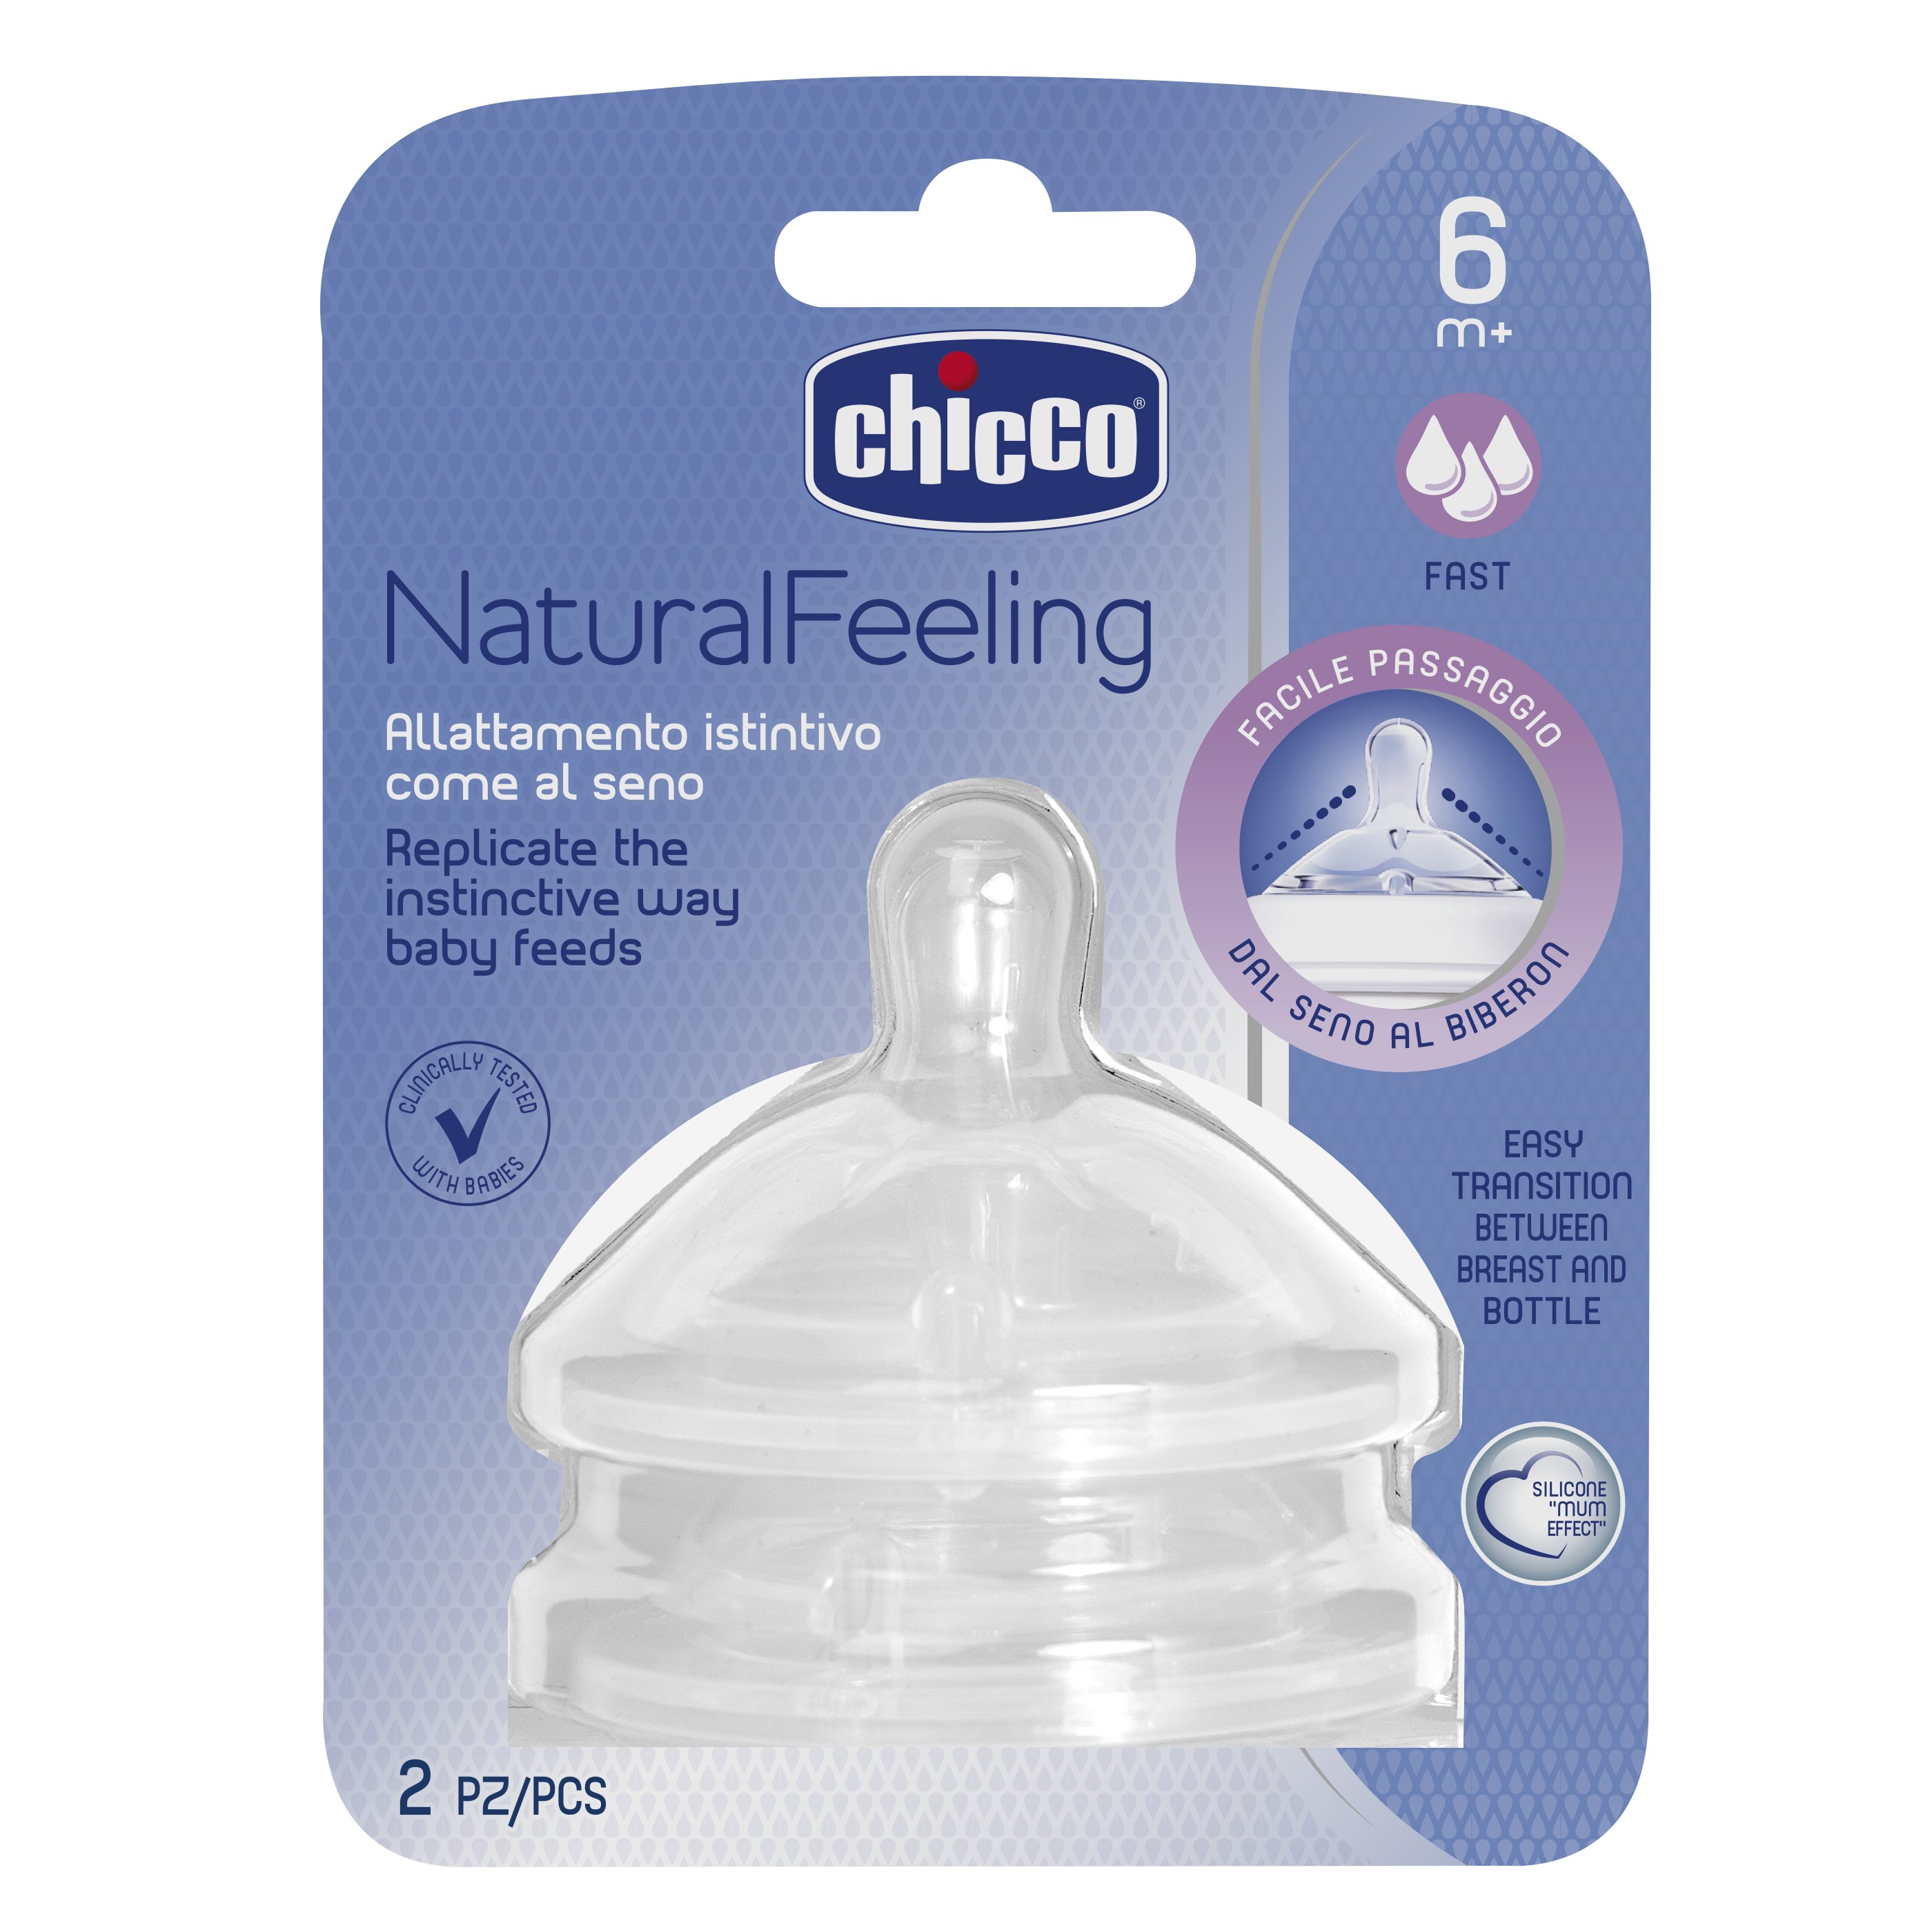 Соска для бутылочки Chicco NaturalFeeling, 6 мес+, силиконовая, быстрый поток, 2 шт